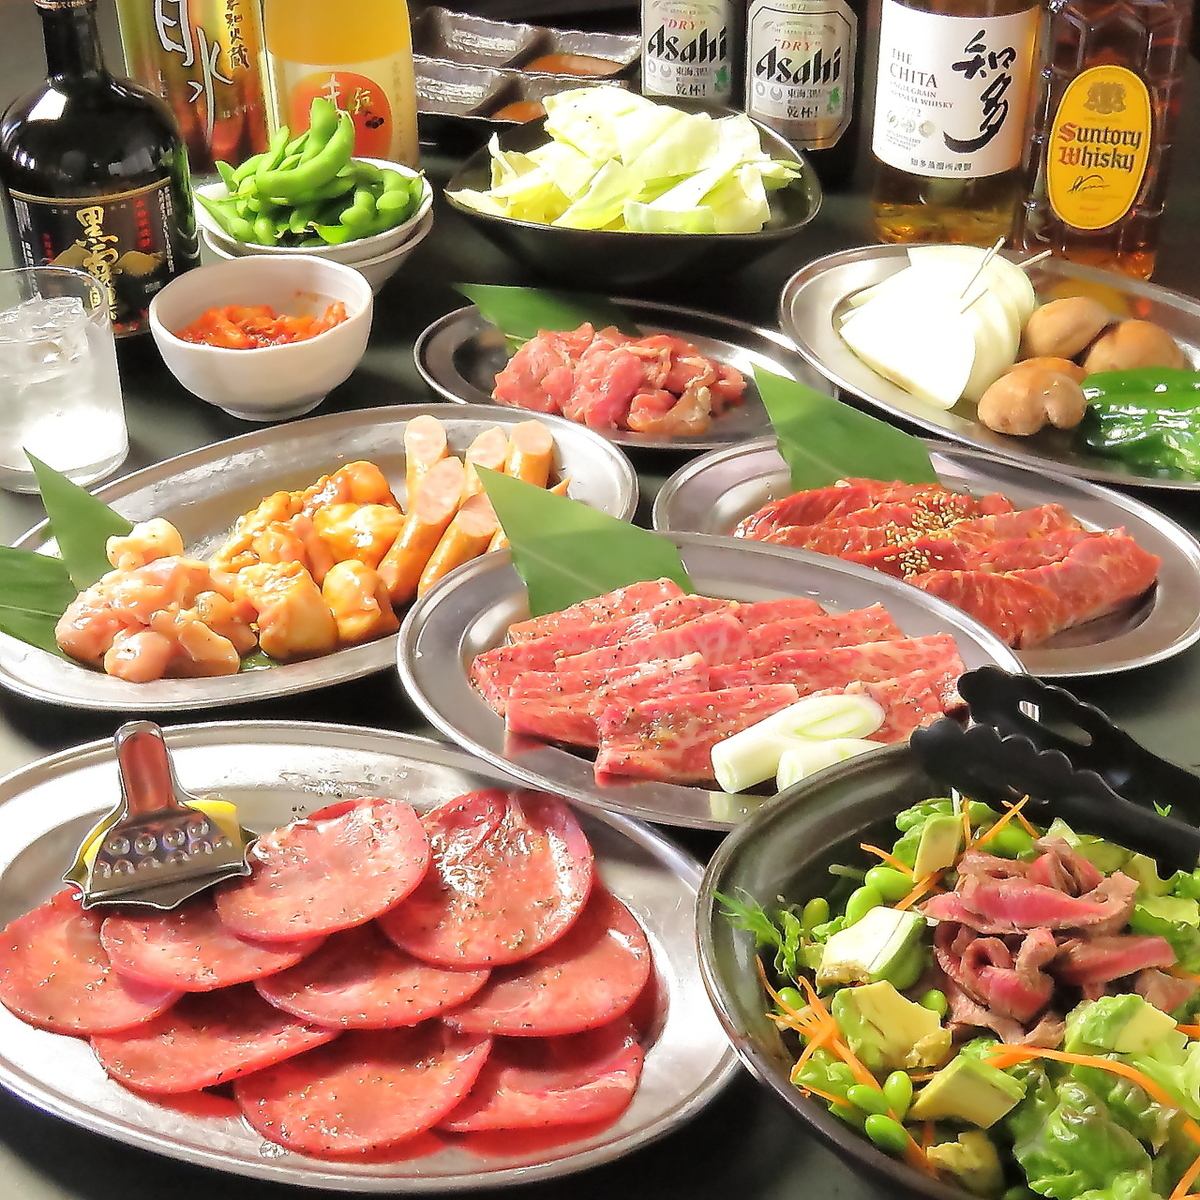 包括著名的鹿儿岛县黑猪颚肉在内，所有12种口味和体积都非常完美！